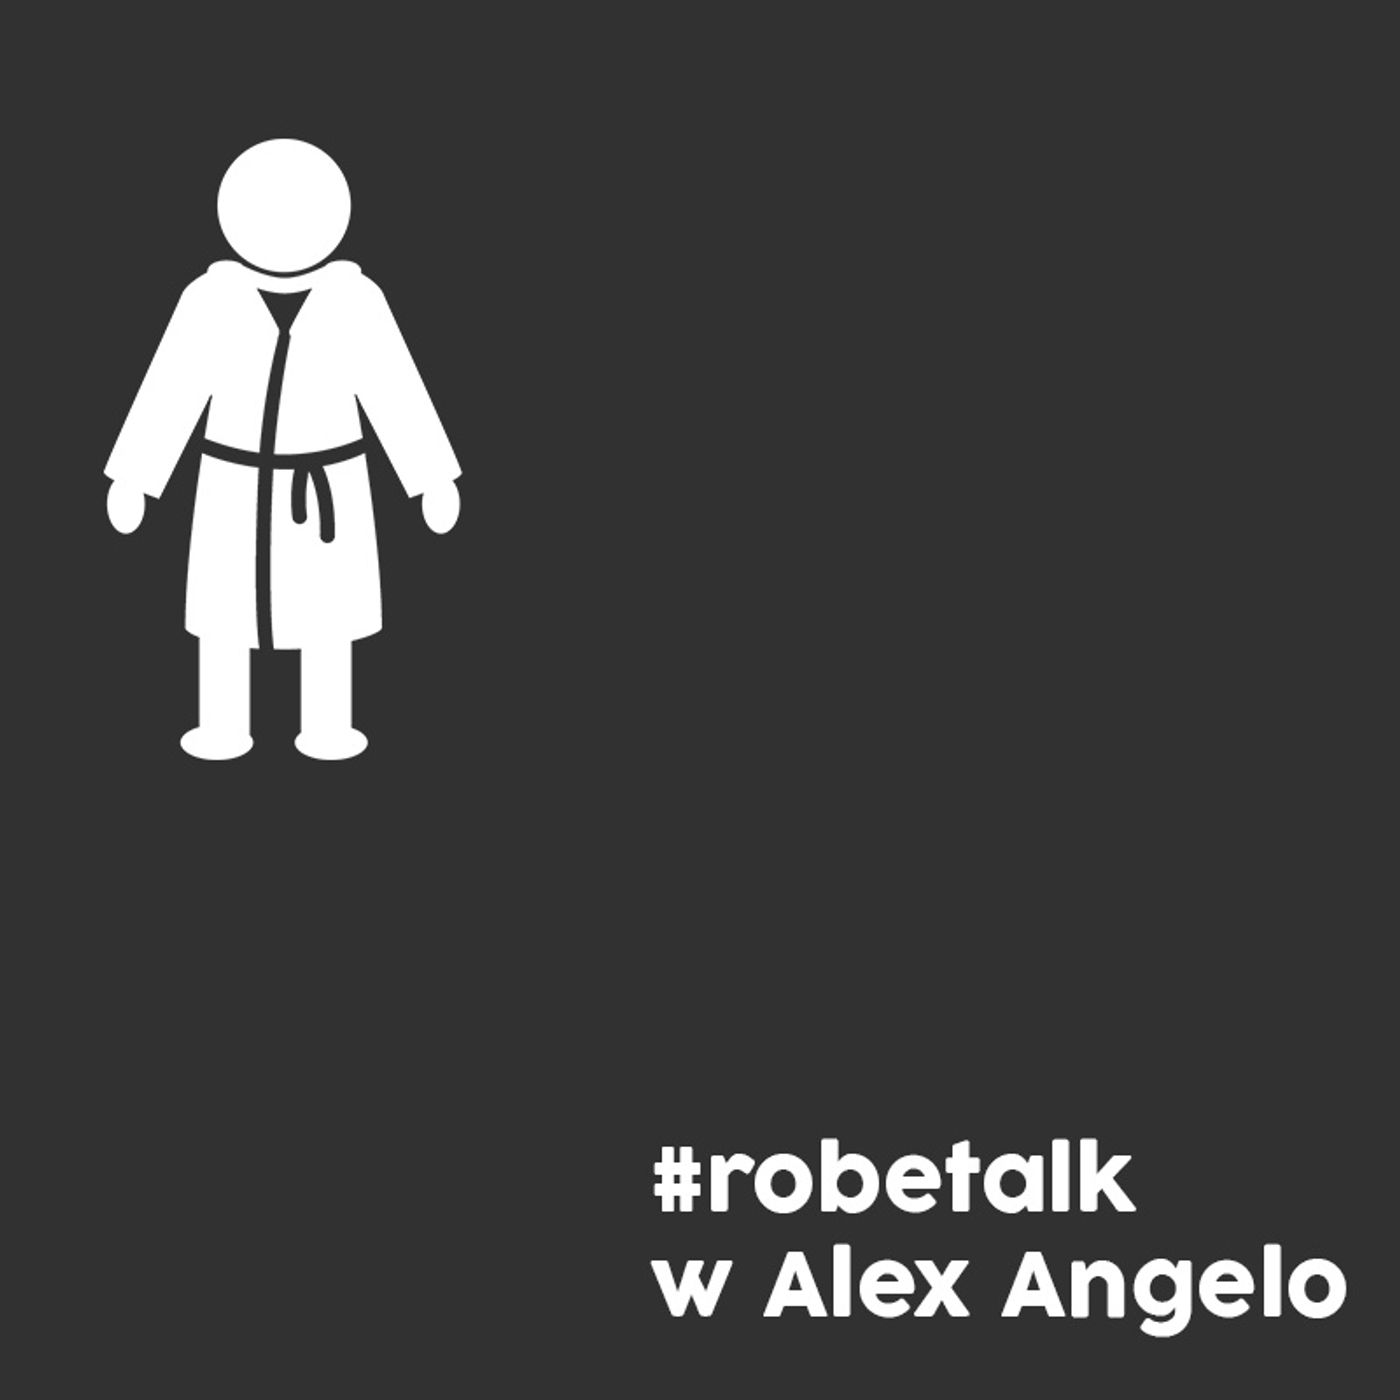 Robetalk Episode 23 #robetalk with Alex Angelo